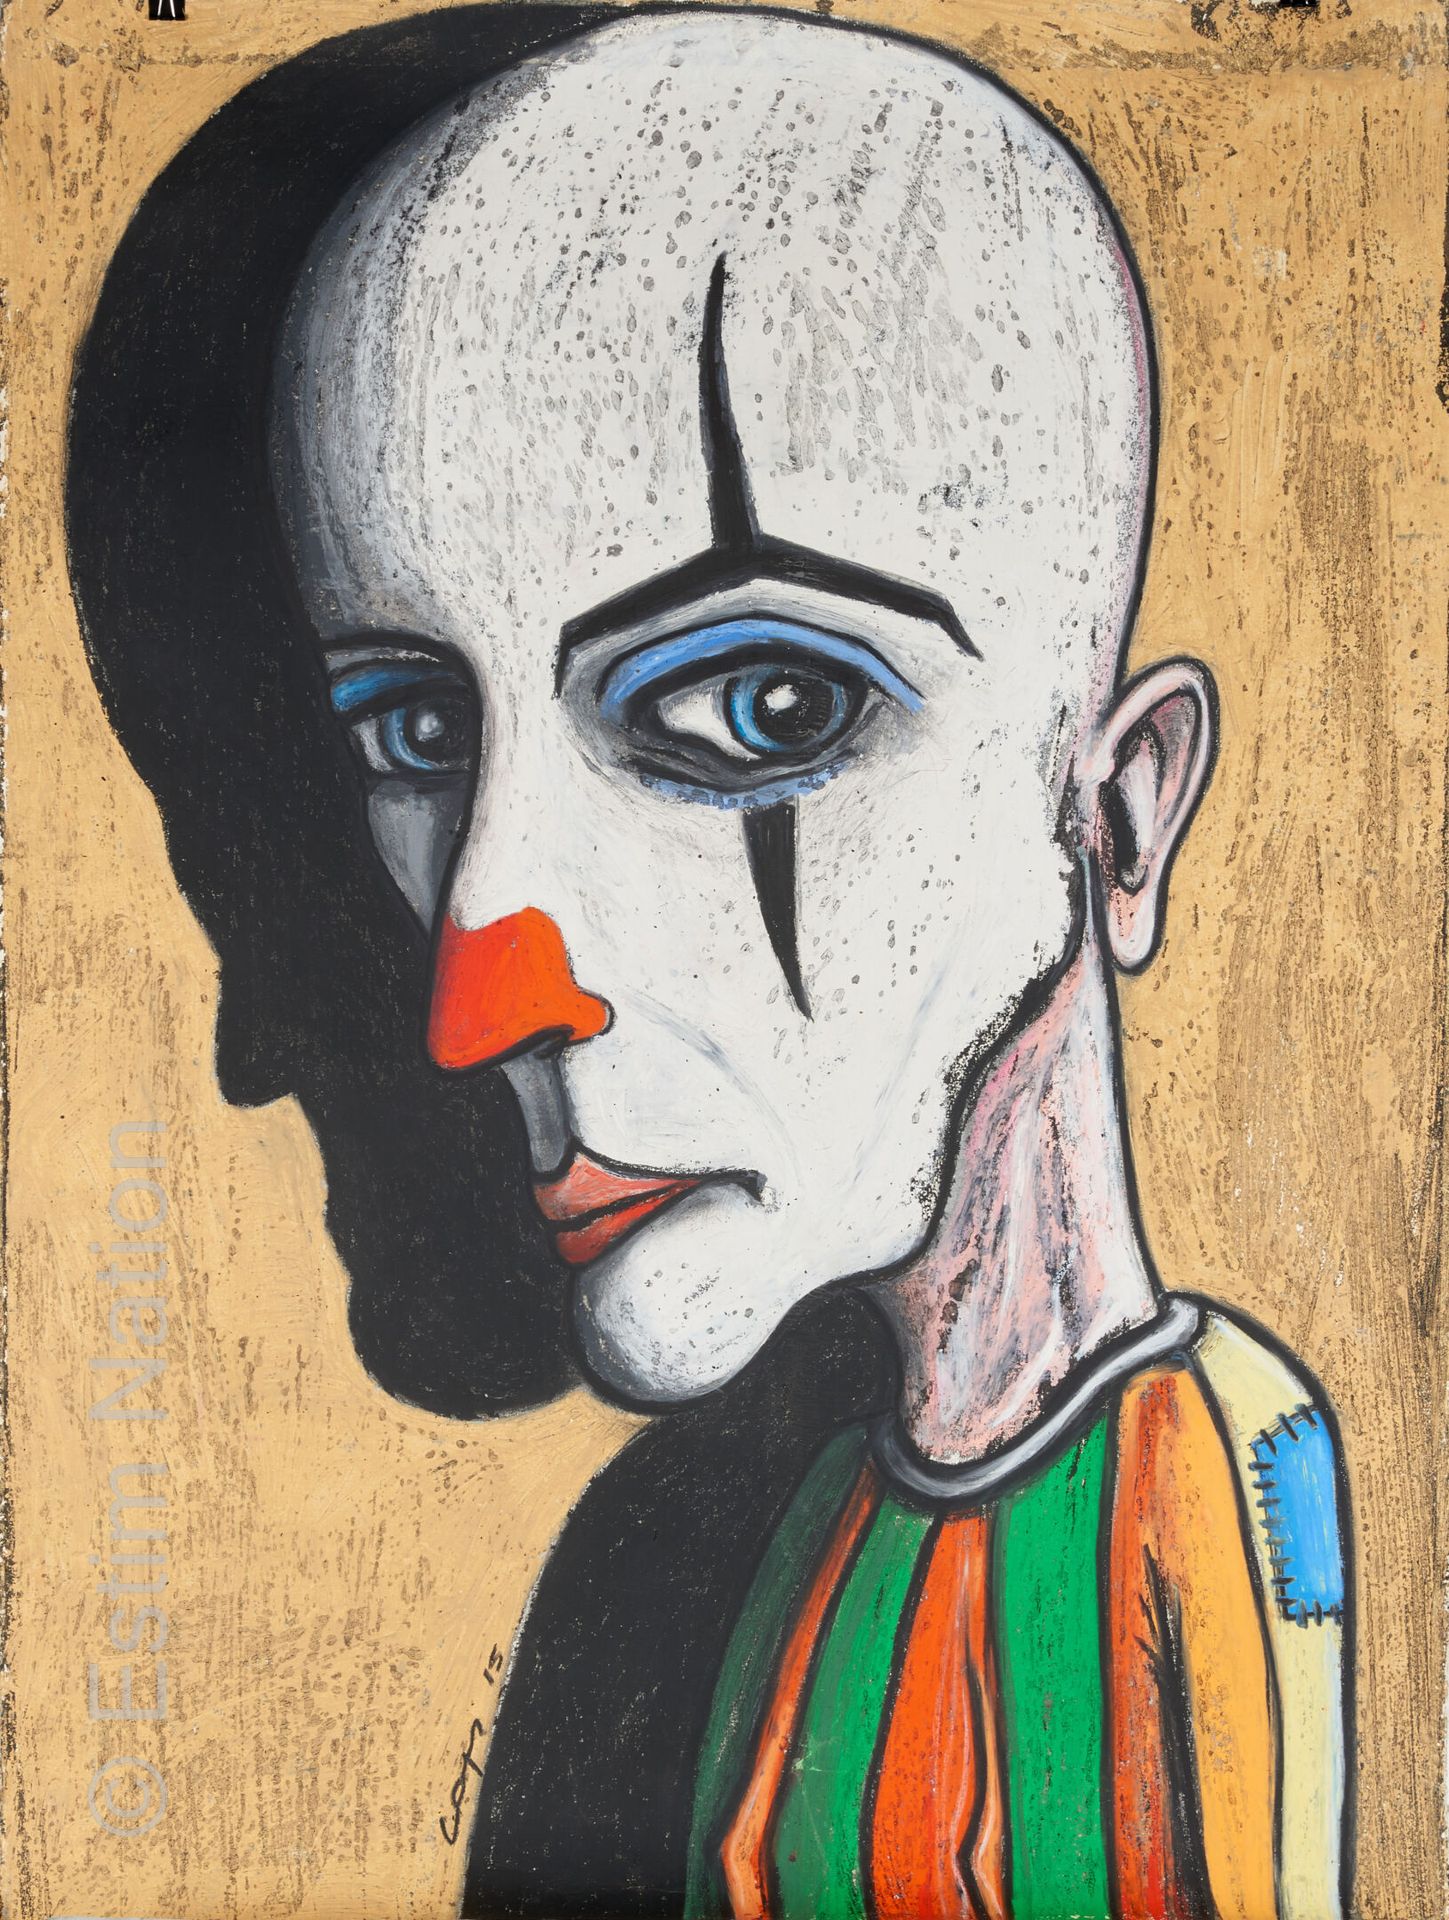 ART CONTEMPORAIN - LAPS - DIVERS Eric LAPS (1968)

Clown

Gouache on paper, sign&hellip;